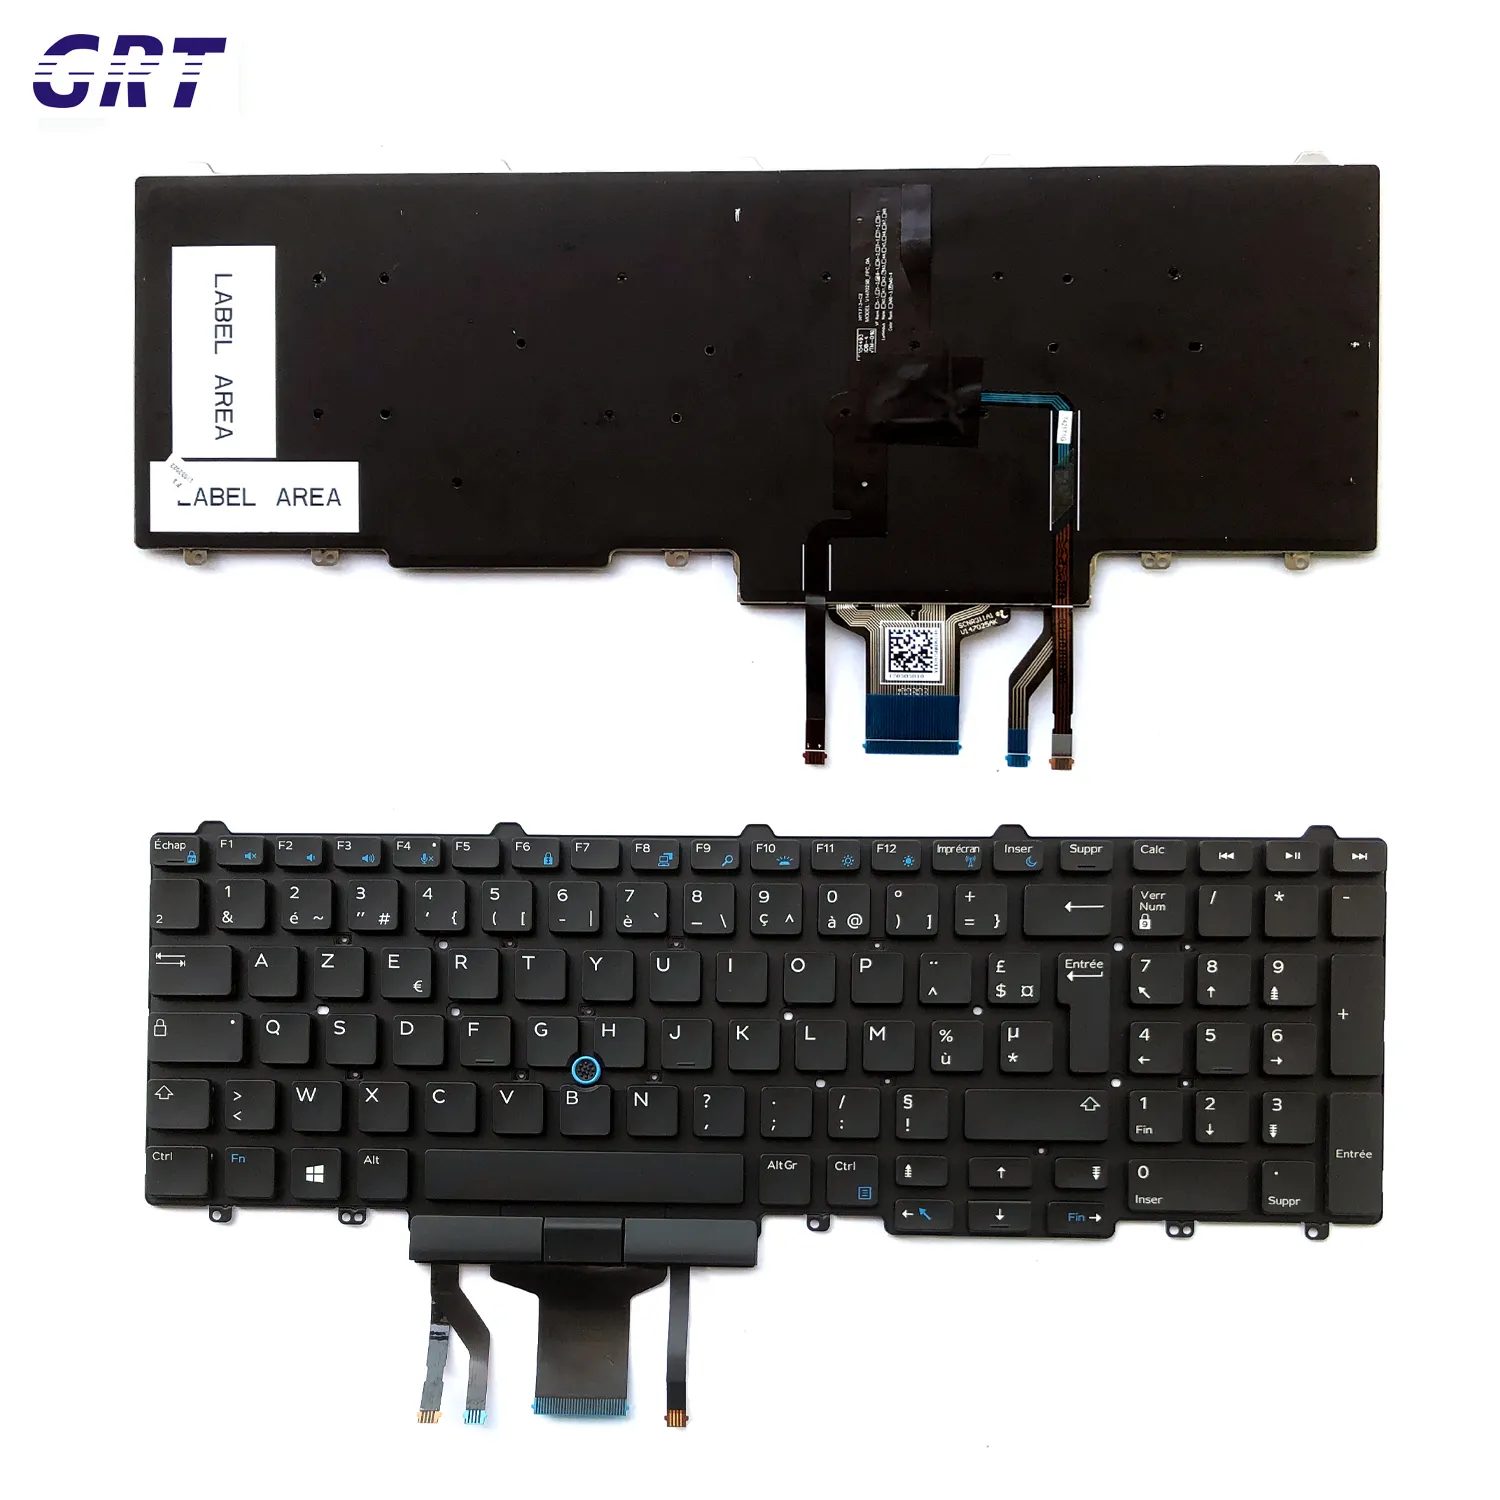 Sunrex teclado del ordenador portátil para Dell Latitude E5550 E5570 E5580 5550 de 5580 a 5590 con retroiluminación FR diseño